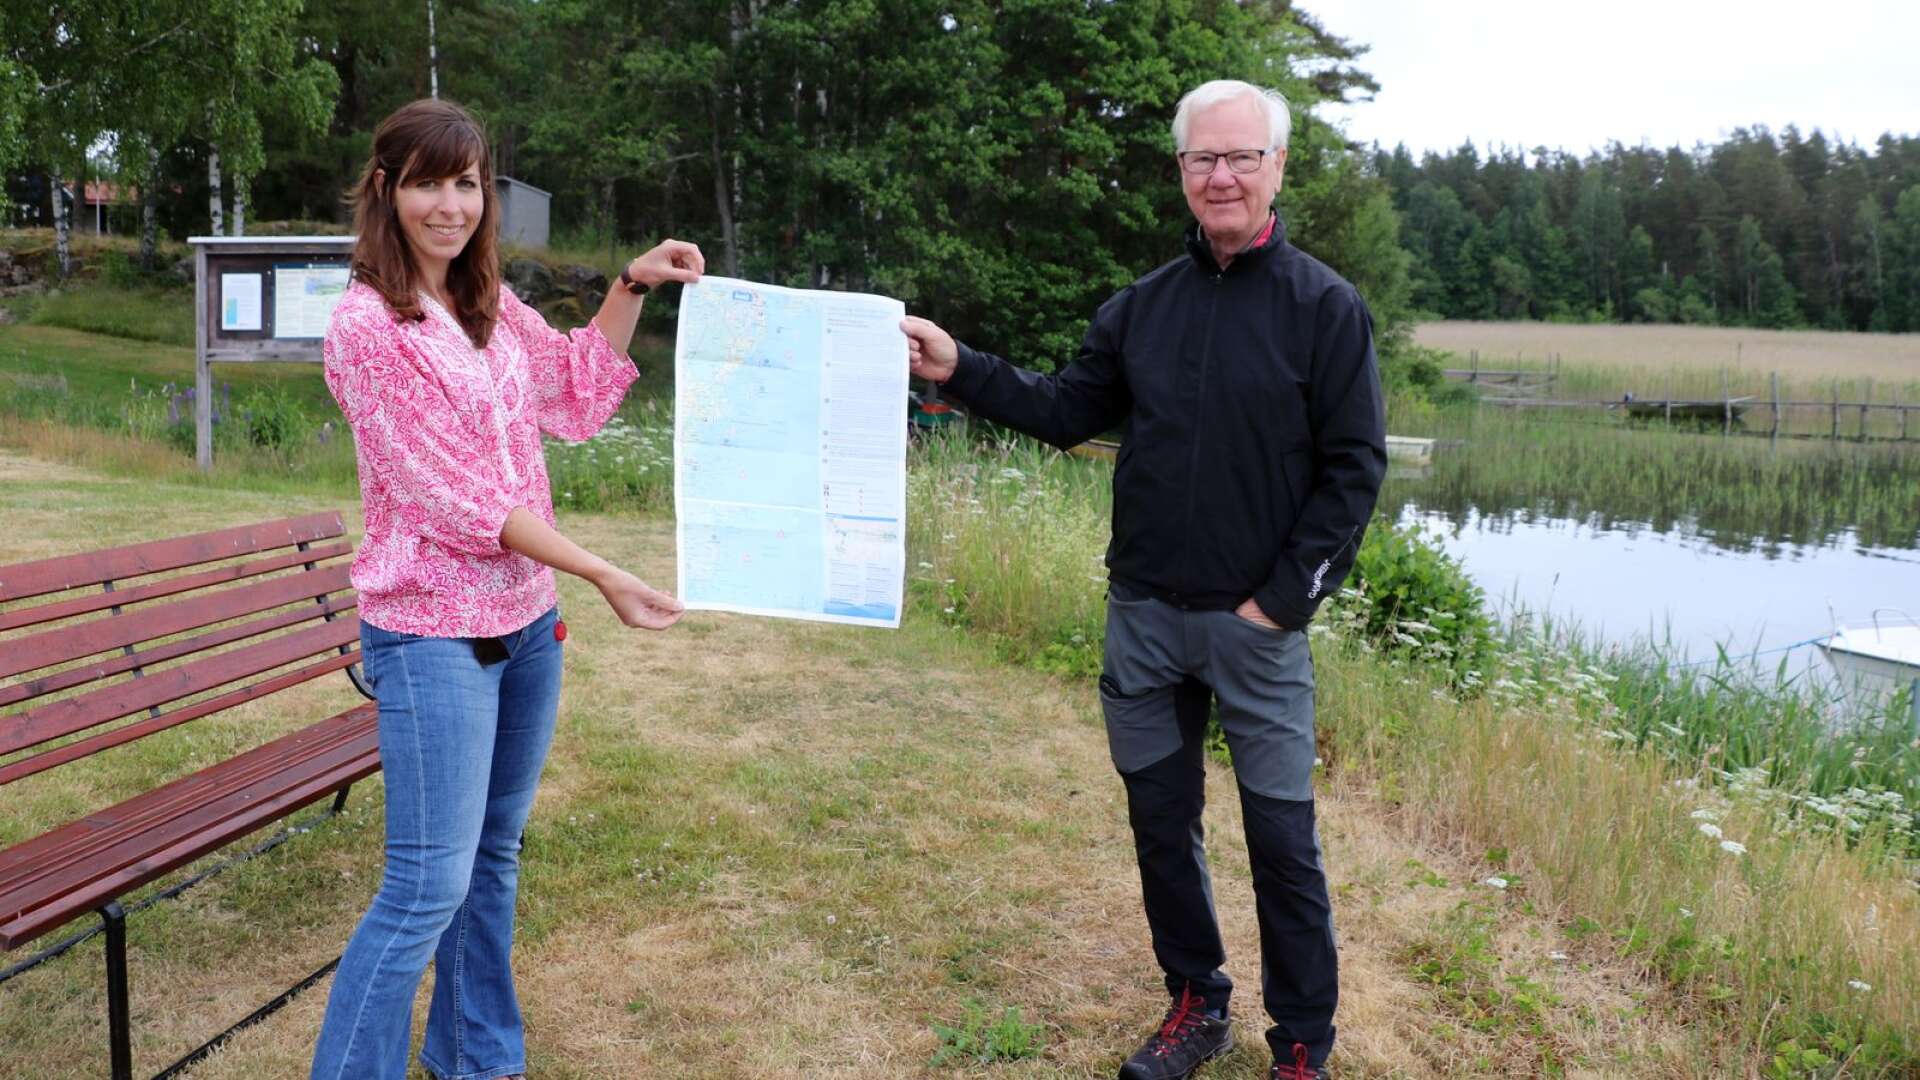 Åmål kommuns turismutvecklare Anna Hjelmberg och Leif Nilsson från Friluftsfrämjandet Åmål-Säffle visade den nya informationsbroschyren om Tösse skärgård och Yttre Bodane skärgård.